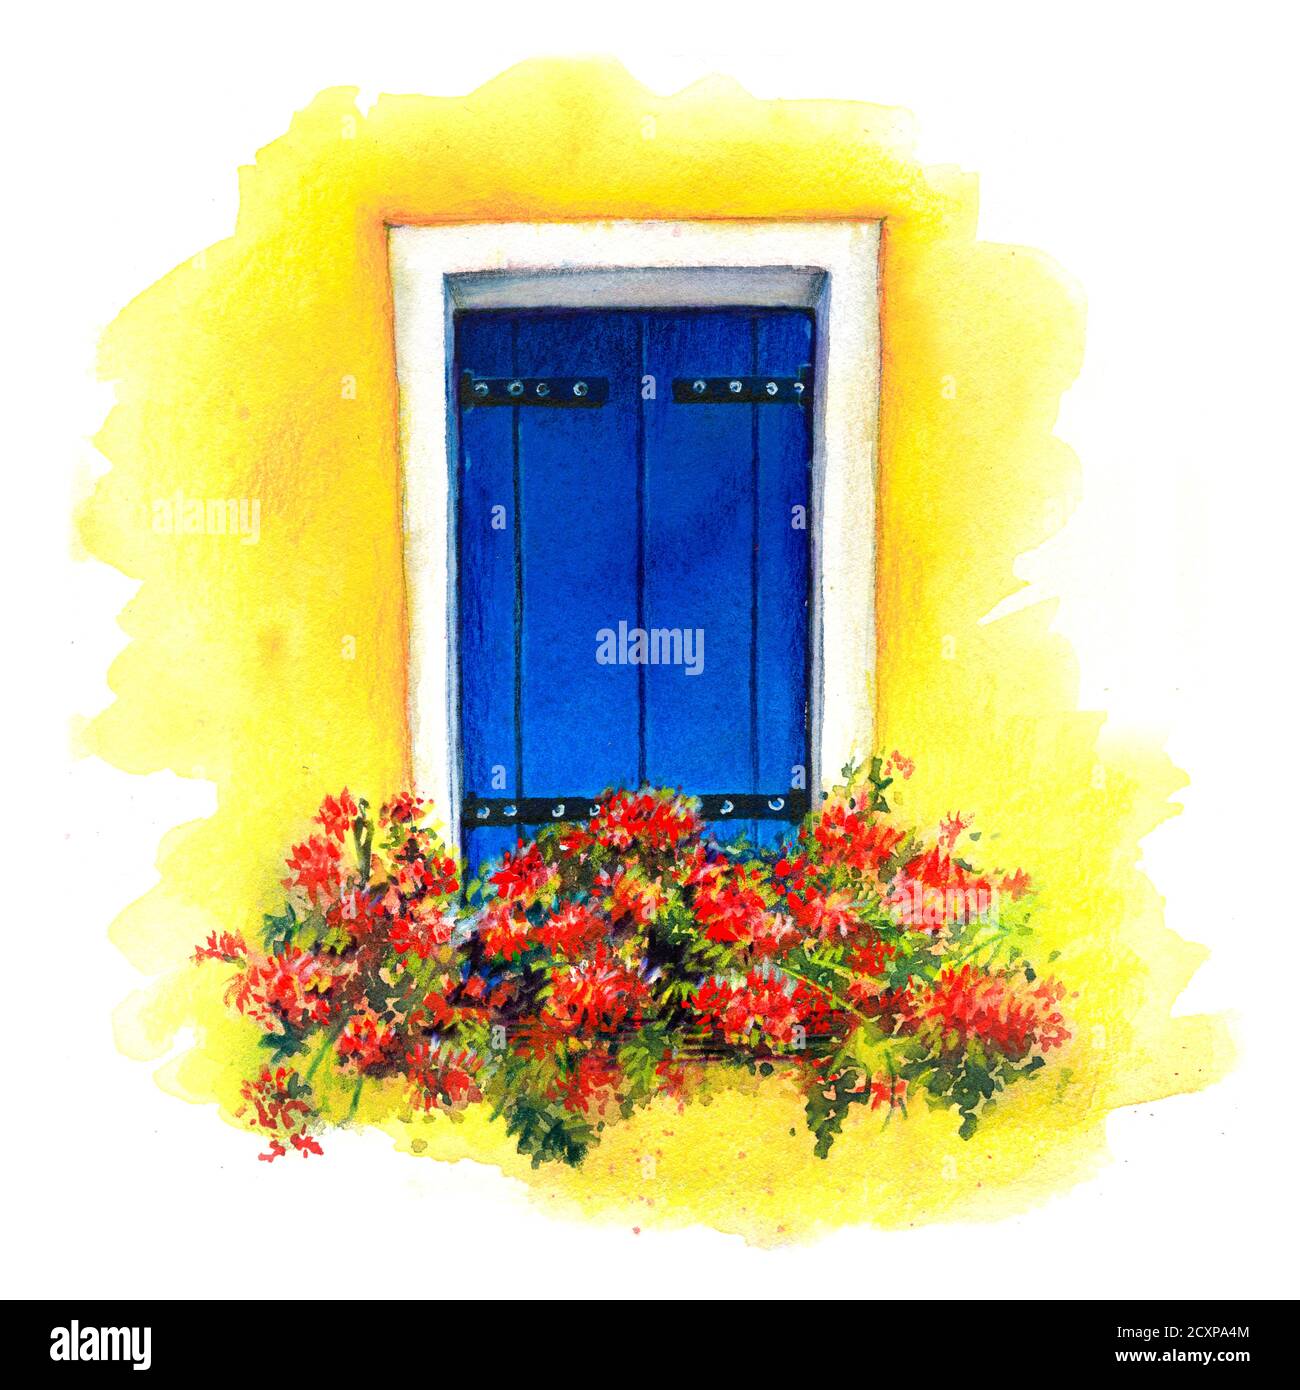 Aquarell-Skizze des Fensters mit blauen Fensterläden und roten Blumen auf der gelben Wand der Häuser auf der Insel Burano, Venedig, Italien. Aquarell Stockfoto